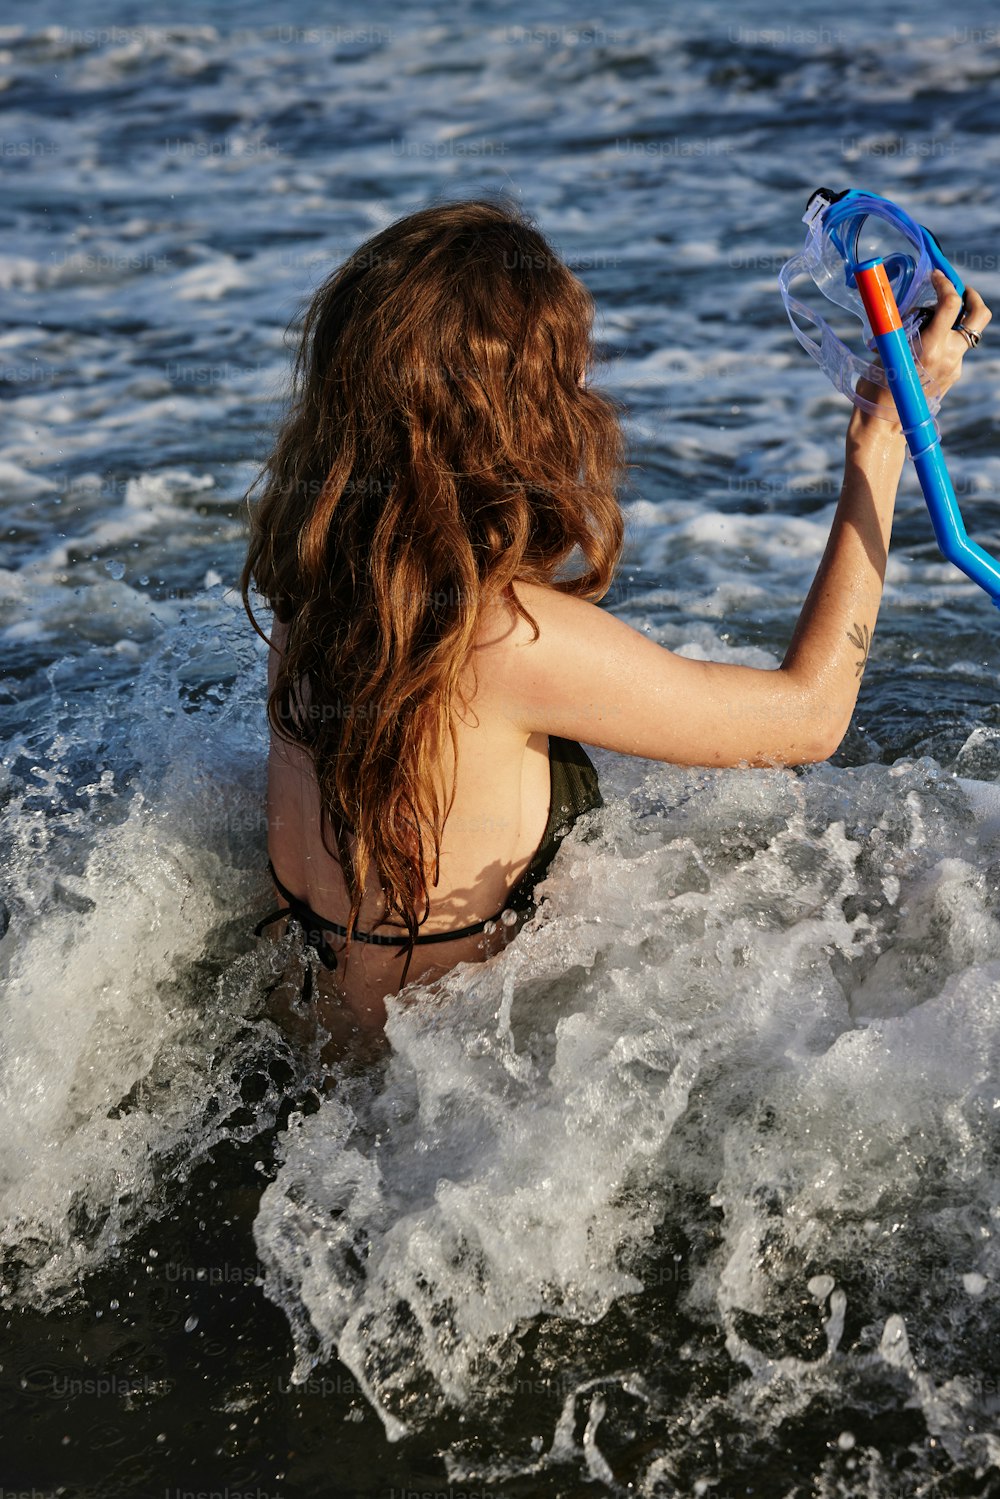 비키니를 입은 여자가 물에 파란 튜브를 들고 있다